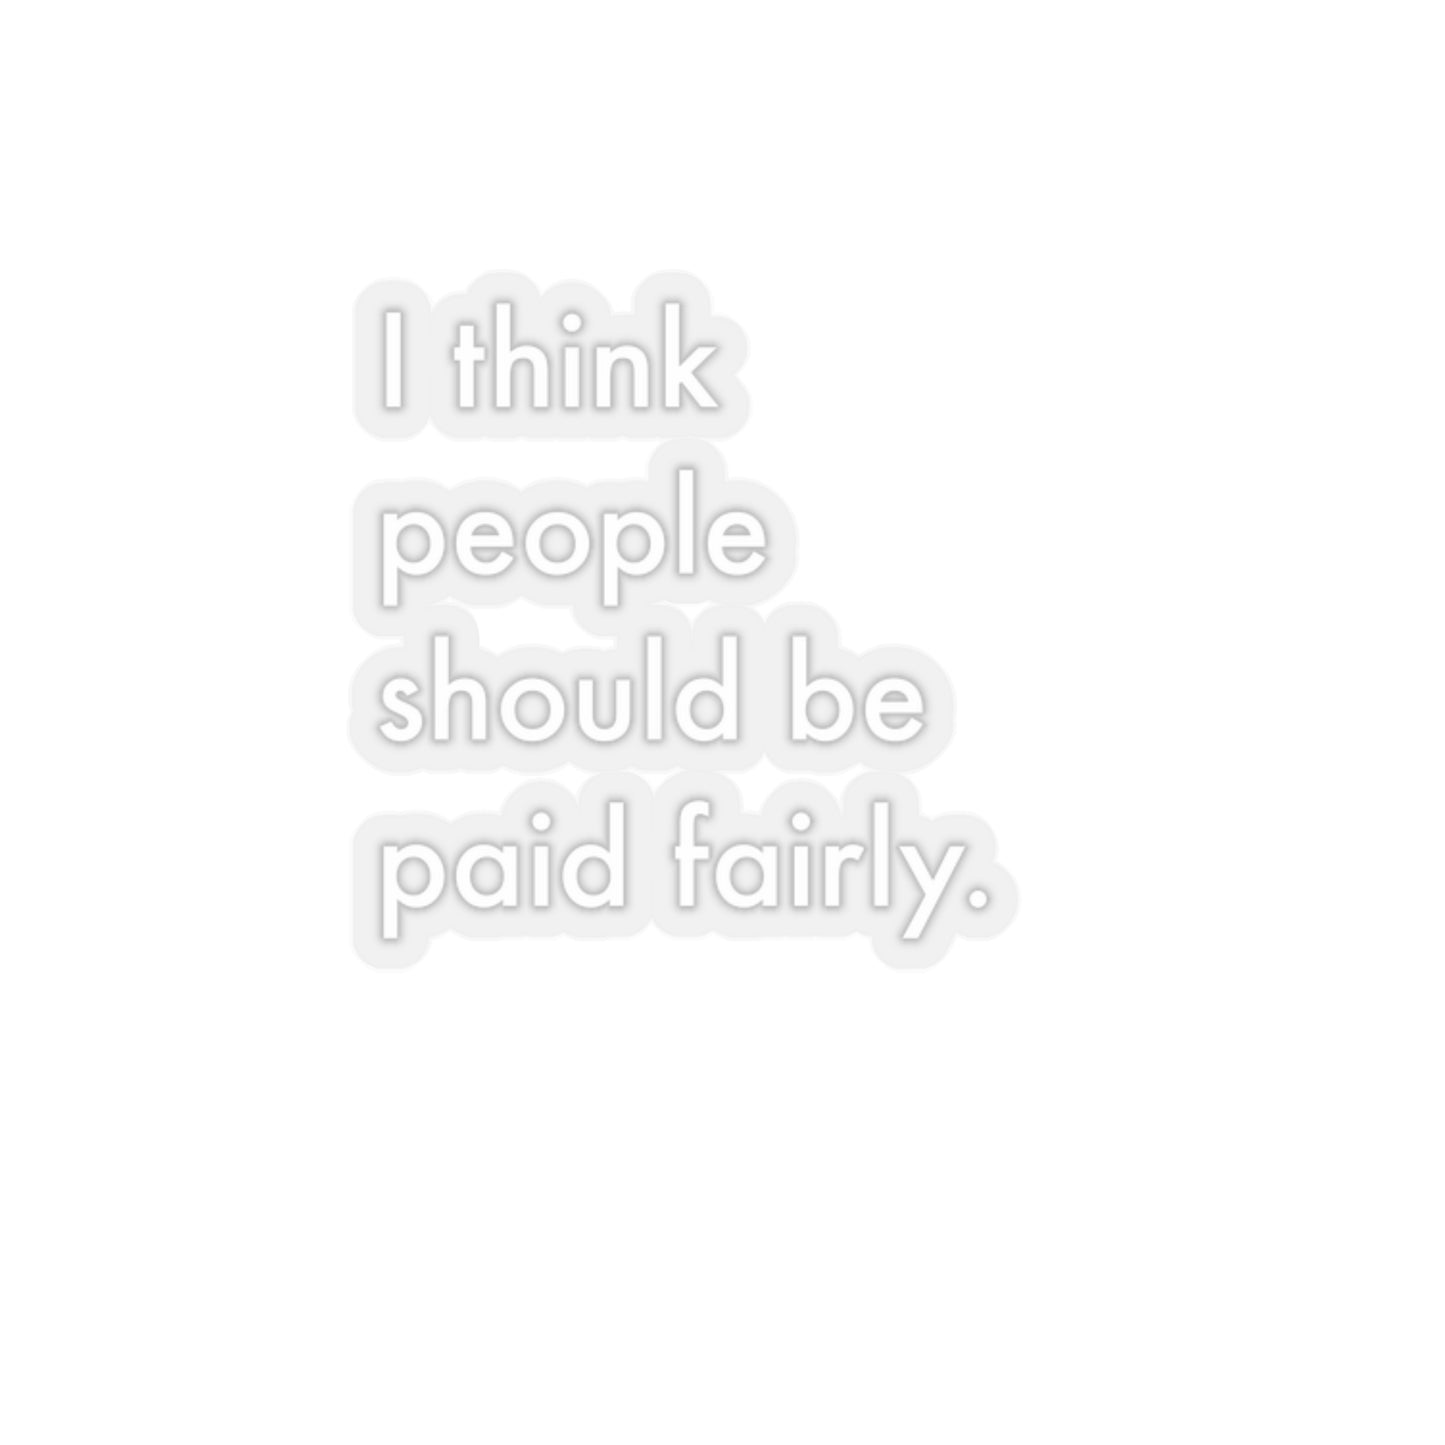 "Fair Pay" - Transparent White - Kiss-Cut Stickers